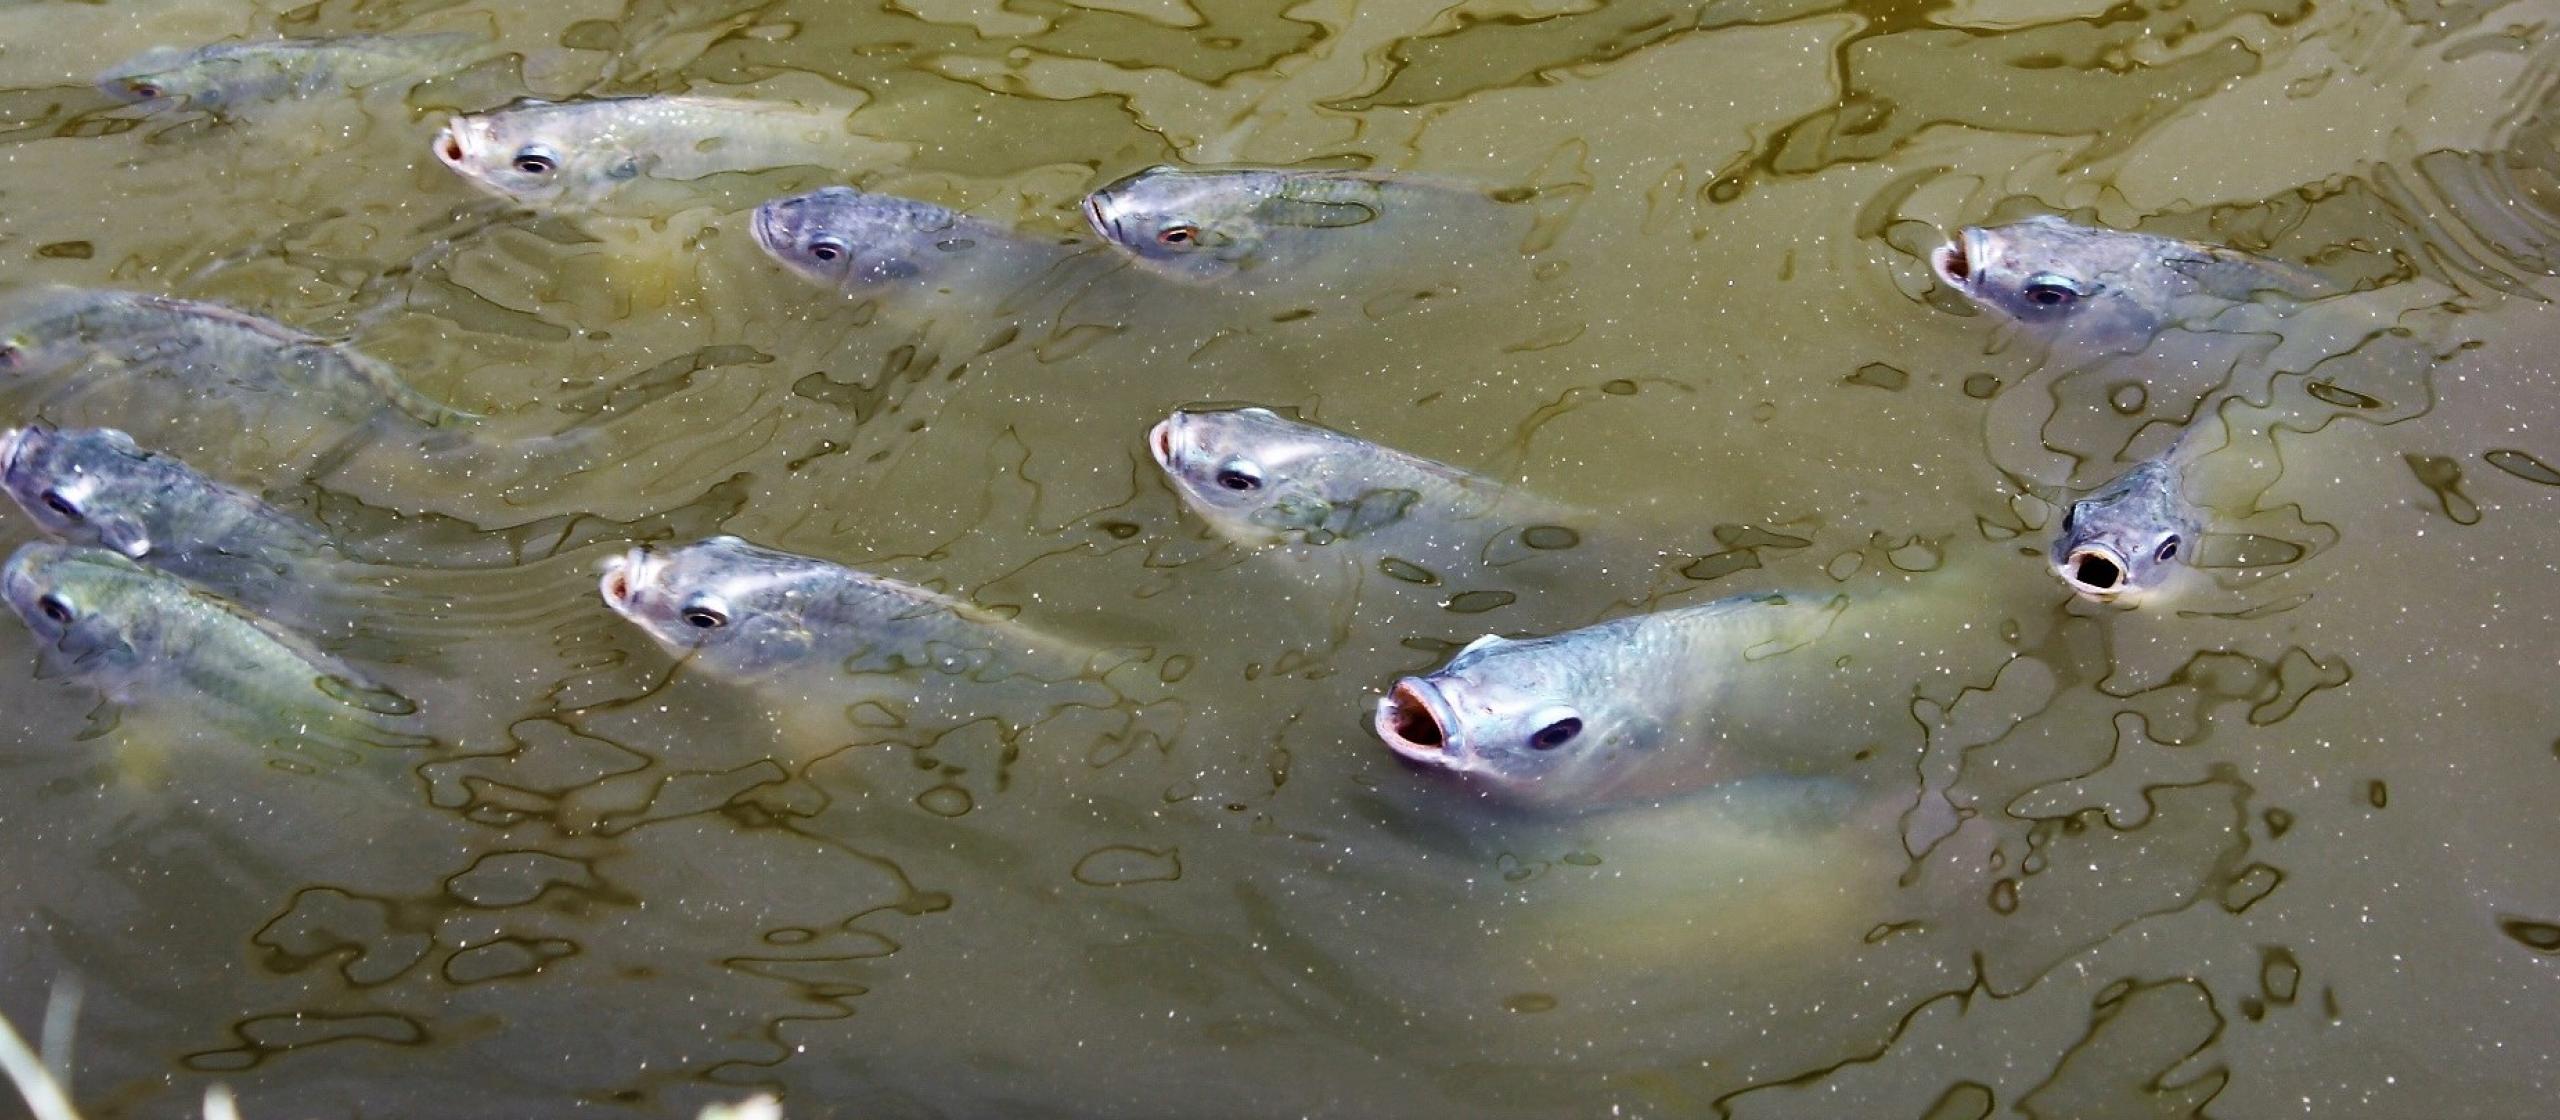 Tilapia fish feeding